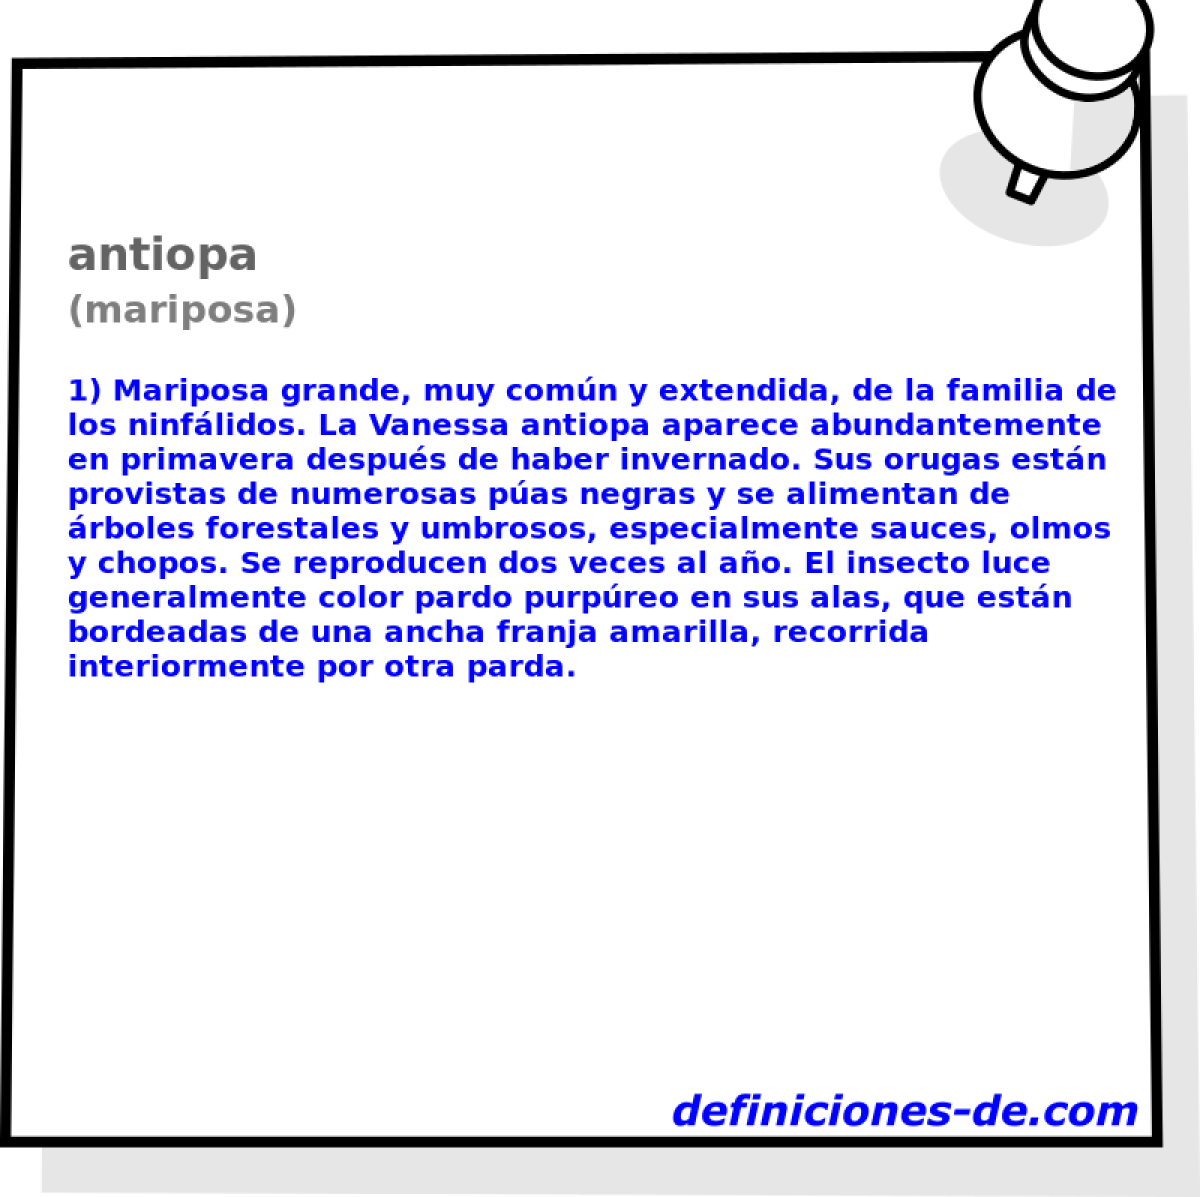 antiopa (mariposa)